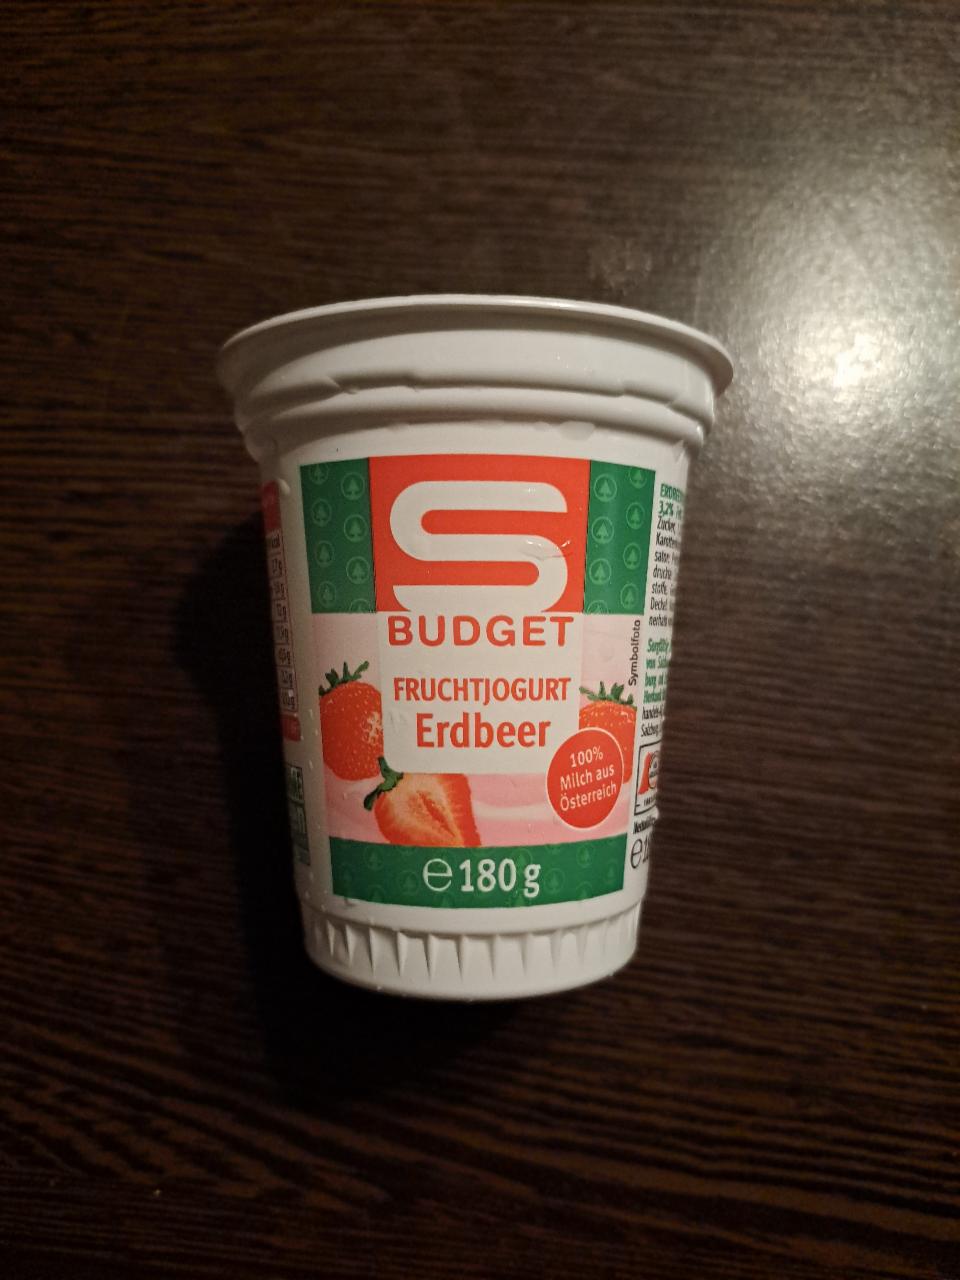 Fotografie - Fruchtjogurt Erdbeer S Budget